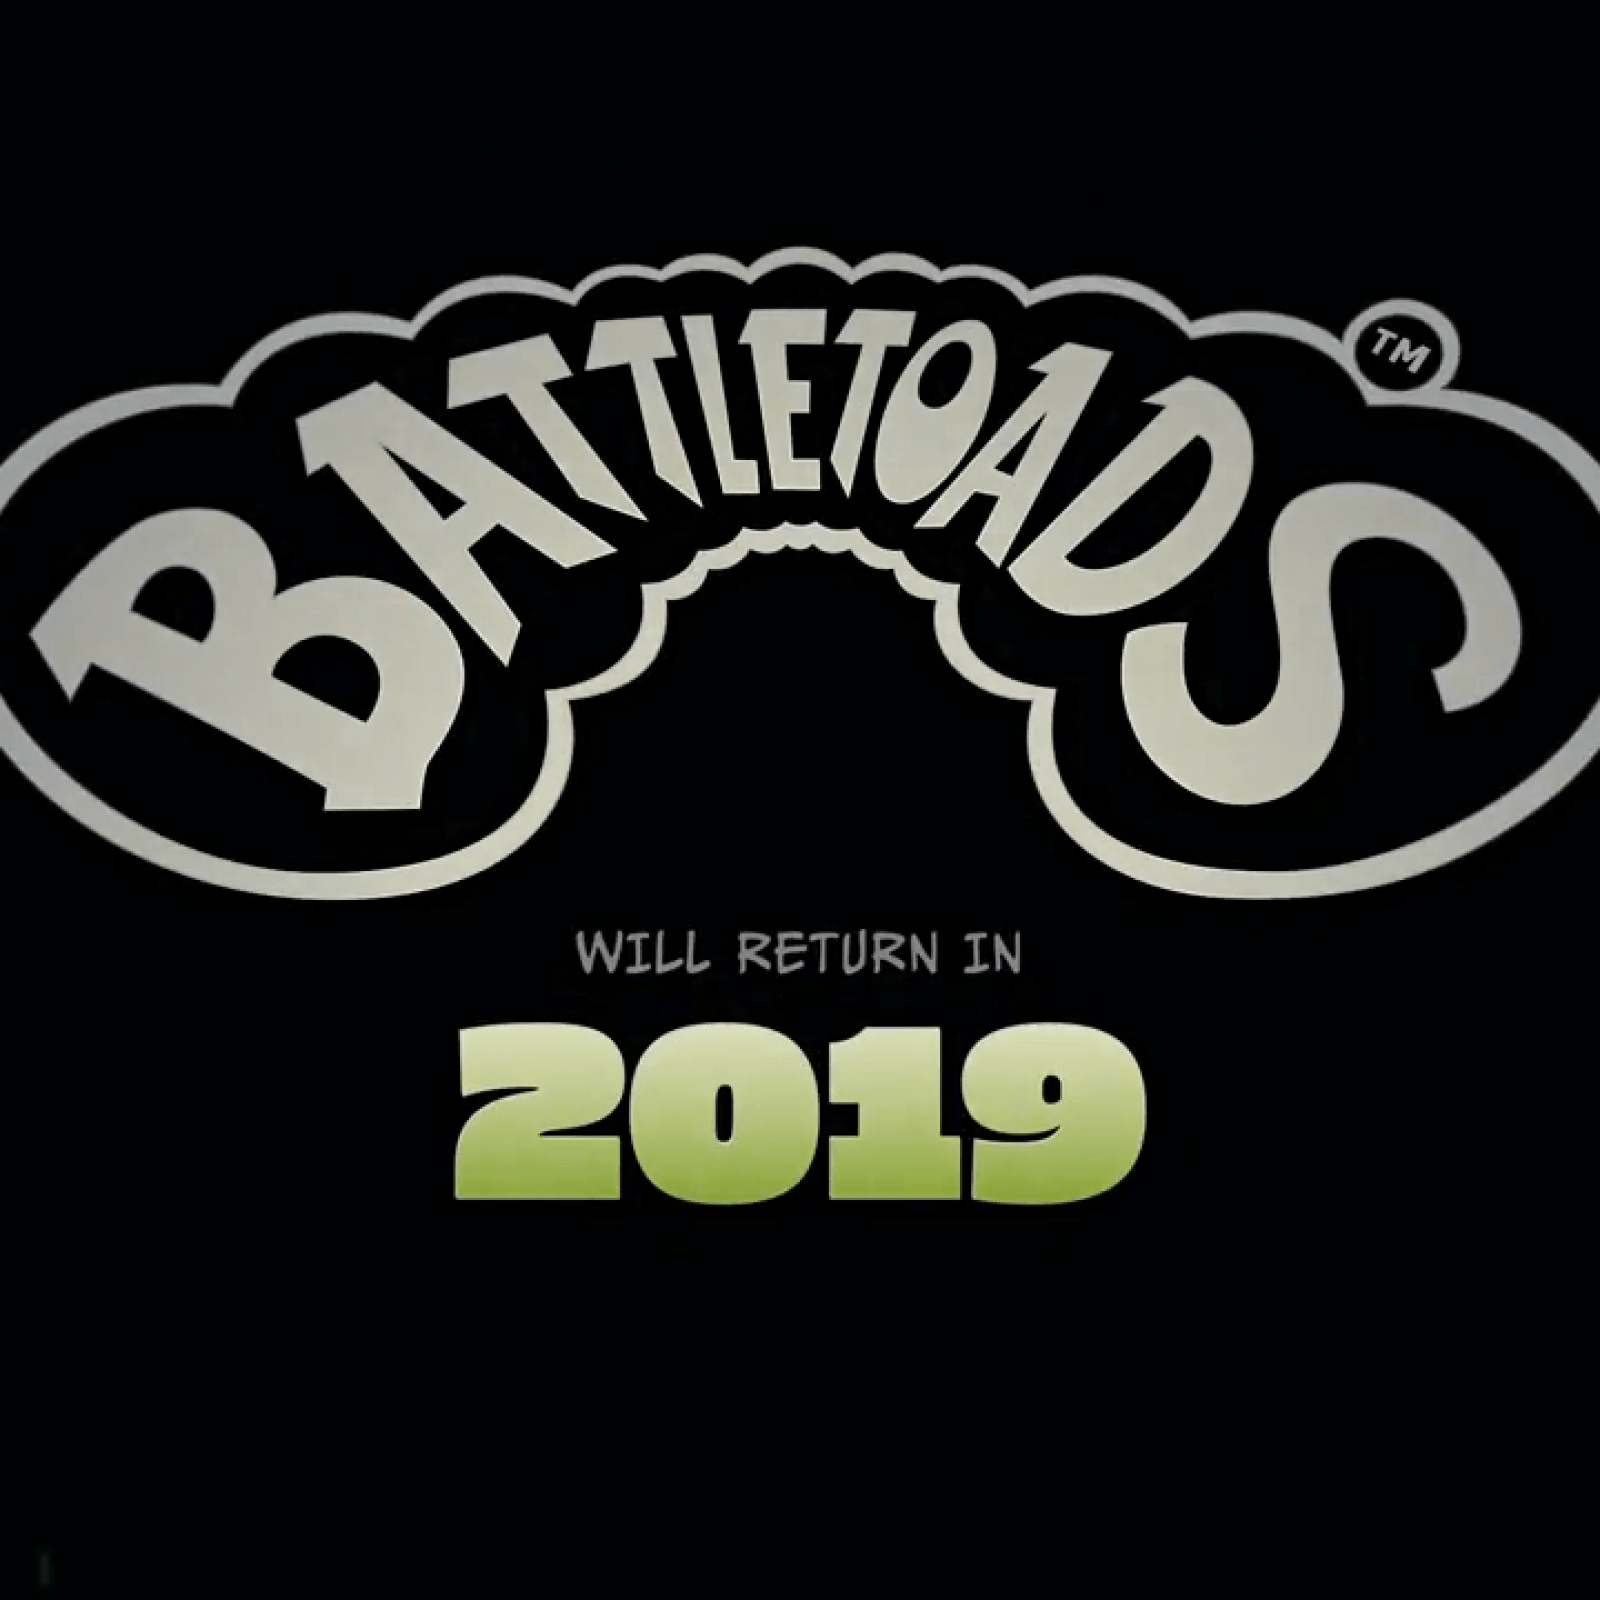 Battletoads Logo - Battletoads' Release Date? Developers Silently Work on Intergalactic ...